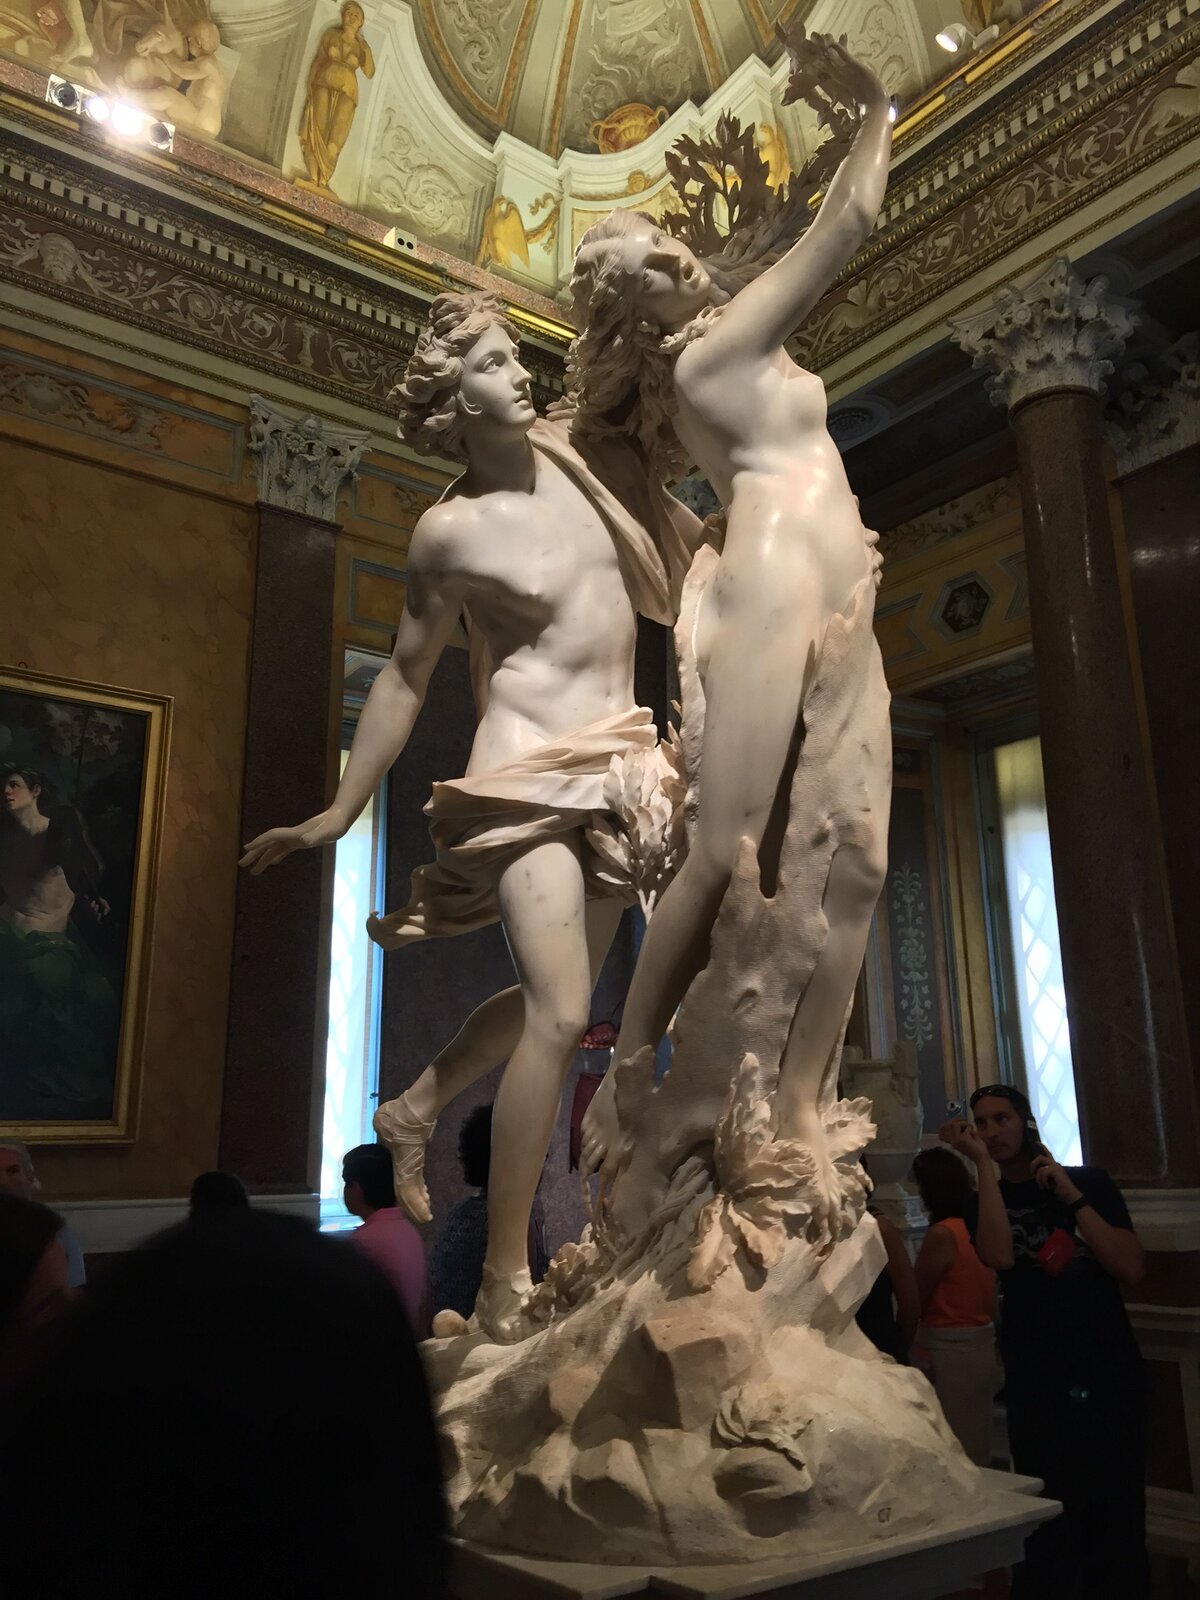 Ilustracja przedstawia rzeźbę „Apollo i Dafne” autorstwa Gianlorenzo Berniniego. Rzeźba ukazuje nagą kobietę oraz mężczyznę. Postać kobiety ma prawą rękę uniesioną do góry. Głowa jej jest przechylona w prawo, a długie włosy są rozwiane jakby przez wiatr. Postać ma przerażony wyraz twarzy. Mężczyzna stojący za kobietę, lewą ręką trzyma na jej biodrze. Postać również ma dłuższe, rozwiane włosy. Mężczyzna ma osłonięte krocze warstwą materiału. Jego prawa ręka wygięta jest do tyłu, a lewa stopa uniesiona do góry.